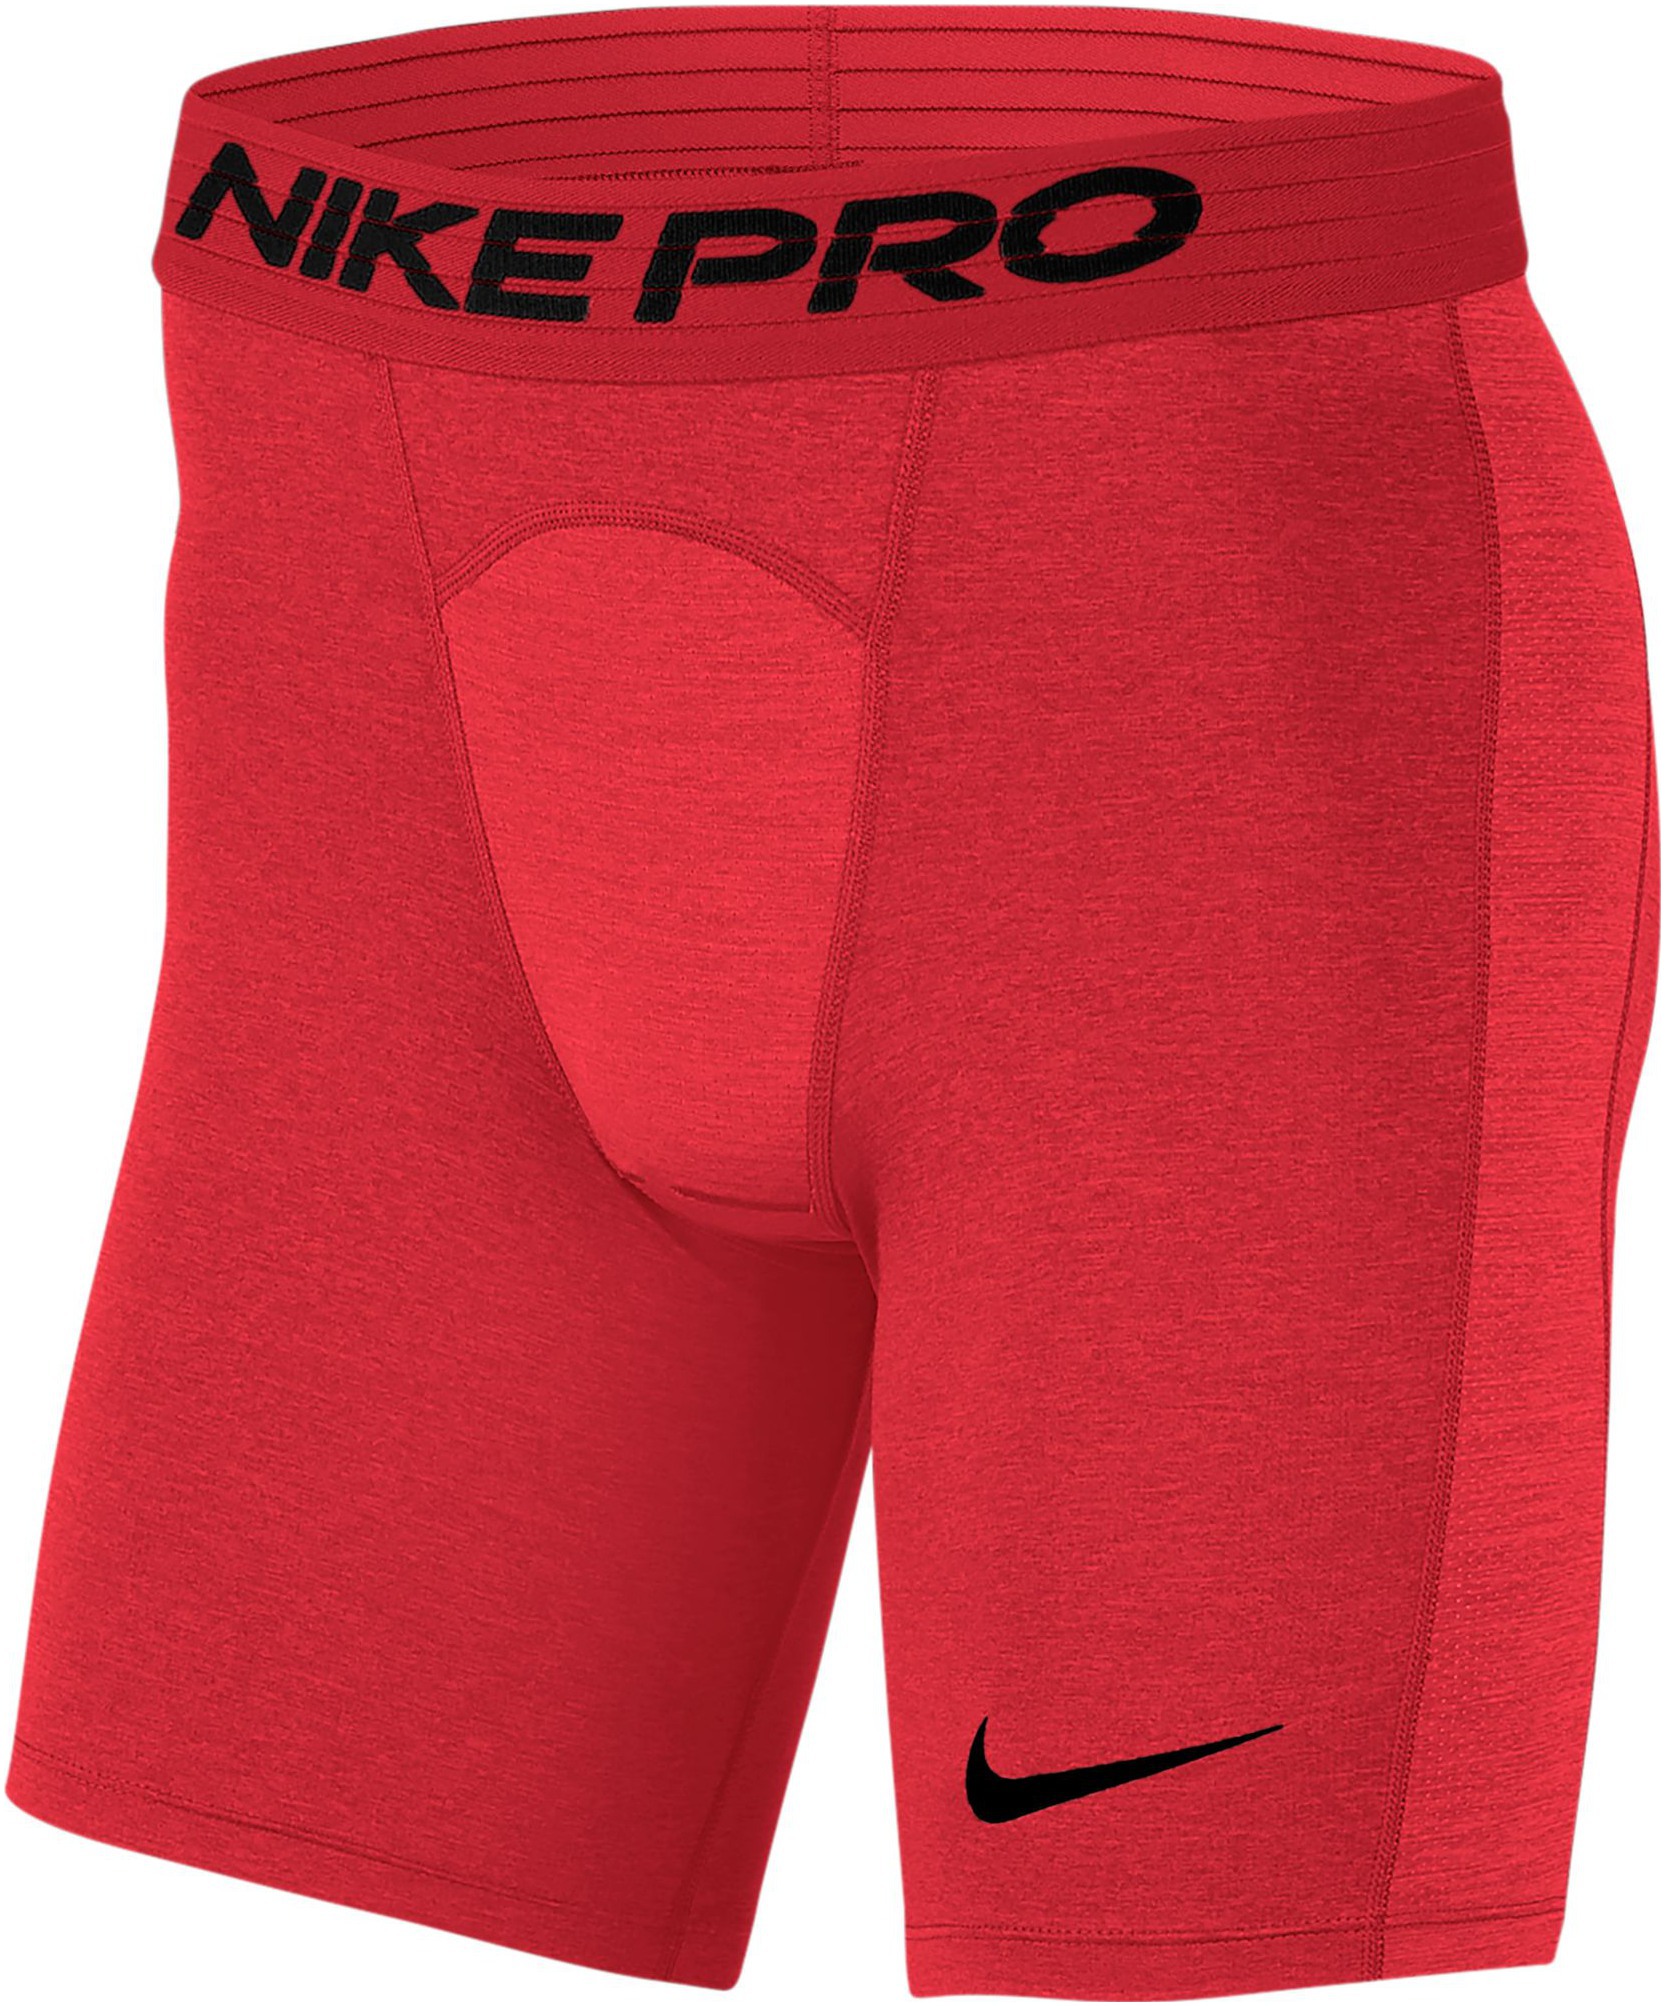 Купить компрессионные шорты. Подтрусники Nike Pro. Белье шорты Nike Pro bv5635-010. Nike Pro трусы компрессионные. Компрессионные шорты Nike Pro.